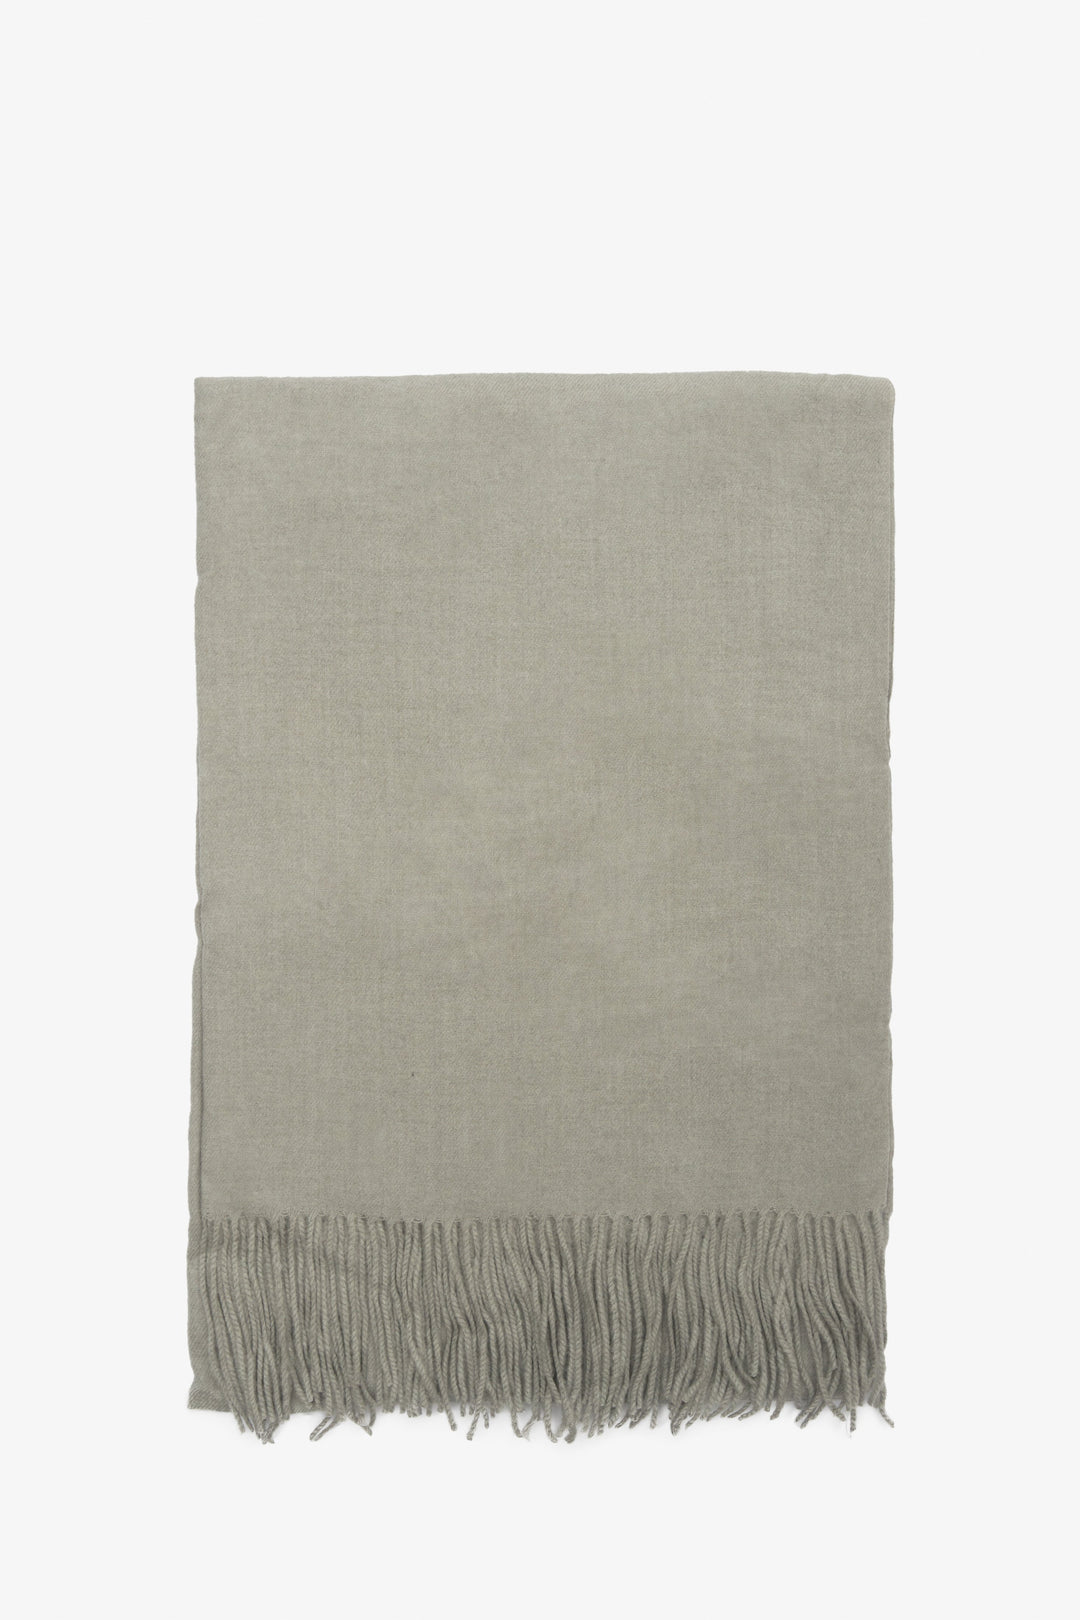 Women's grey scarf by Estro.